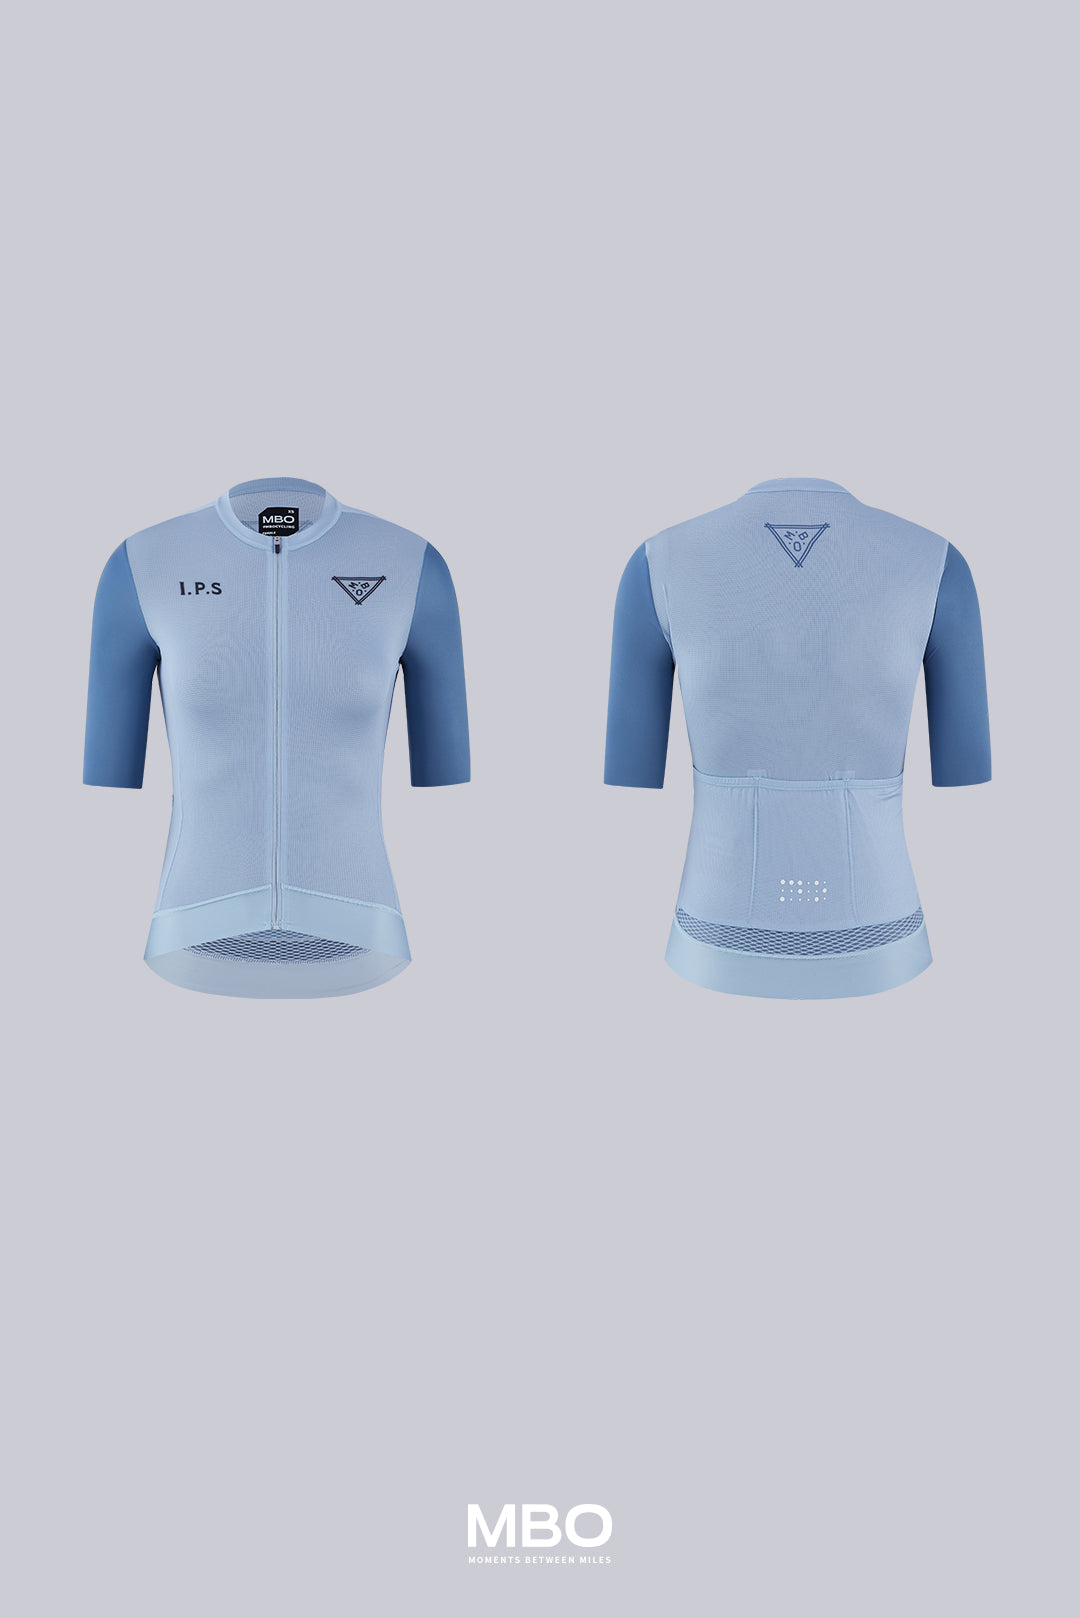 Women's Short Sleeve Jersey- Galaxy Prime Jersey Pale Blue